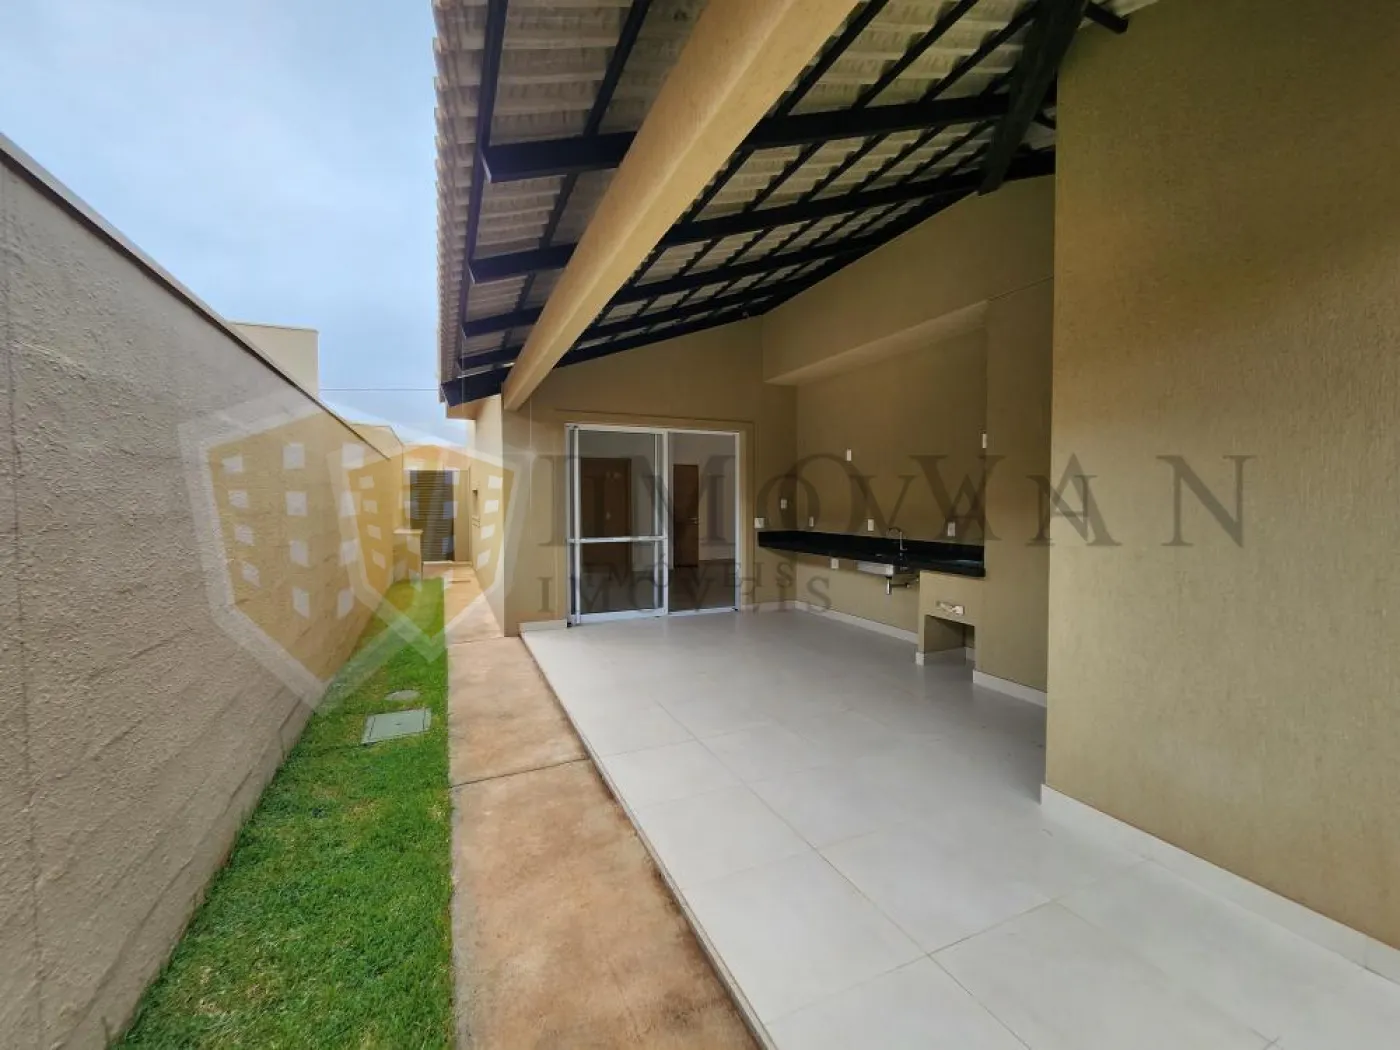 Comprar Casa / Condomínio em Cravinhos R$ 980.000,00 - Foto 10